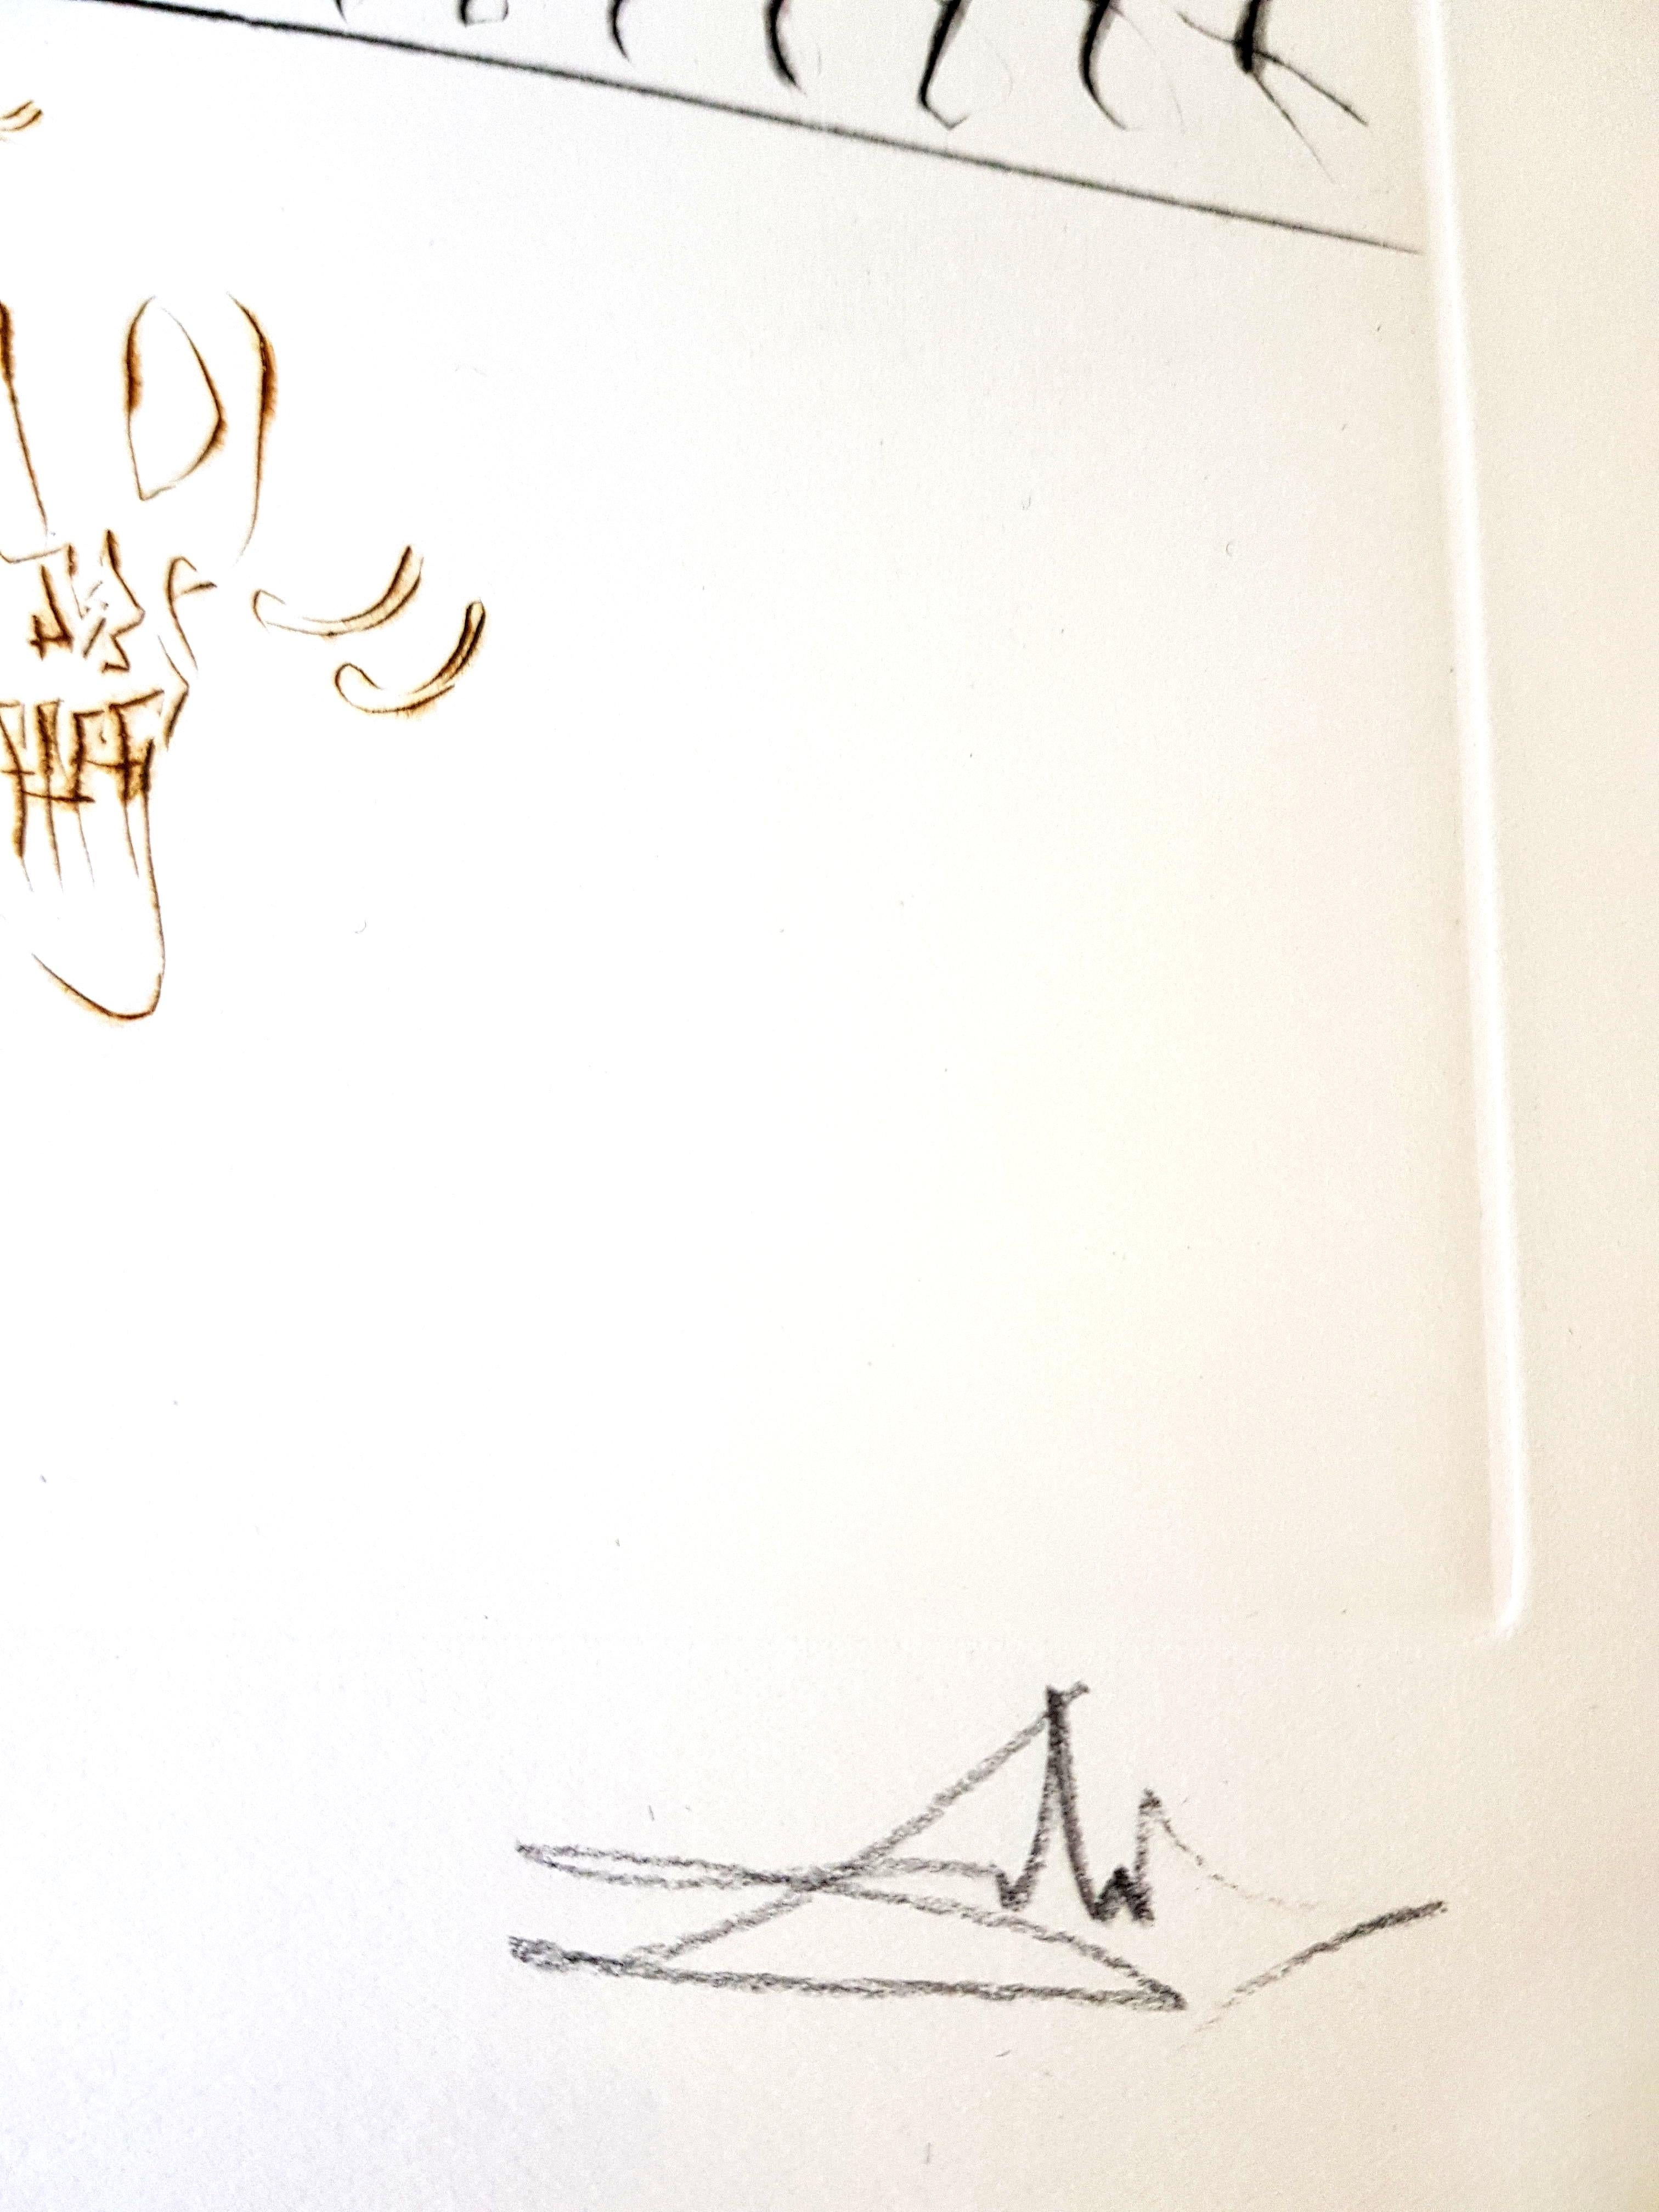 Salvador Dali - Gravure originale signée à la main
De La Quête du Graal
Dimensions : 45 x 33 cm
Signé à la main
Edition : 38/100 
De la rare suite supplémentaire de 100, en plus de l'édition de 249
Catalogue raisonné : Michler-Löpsinger 778-779,